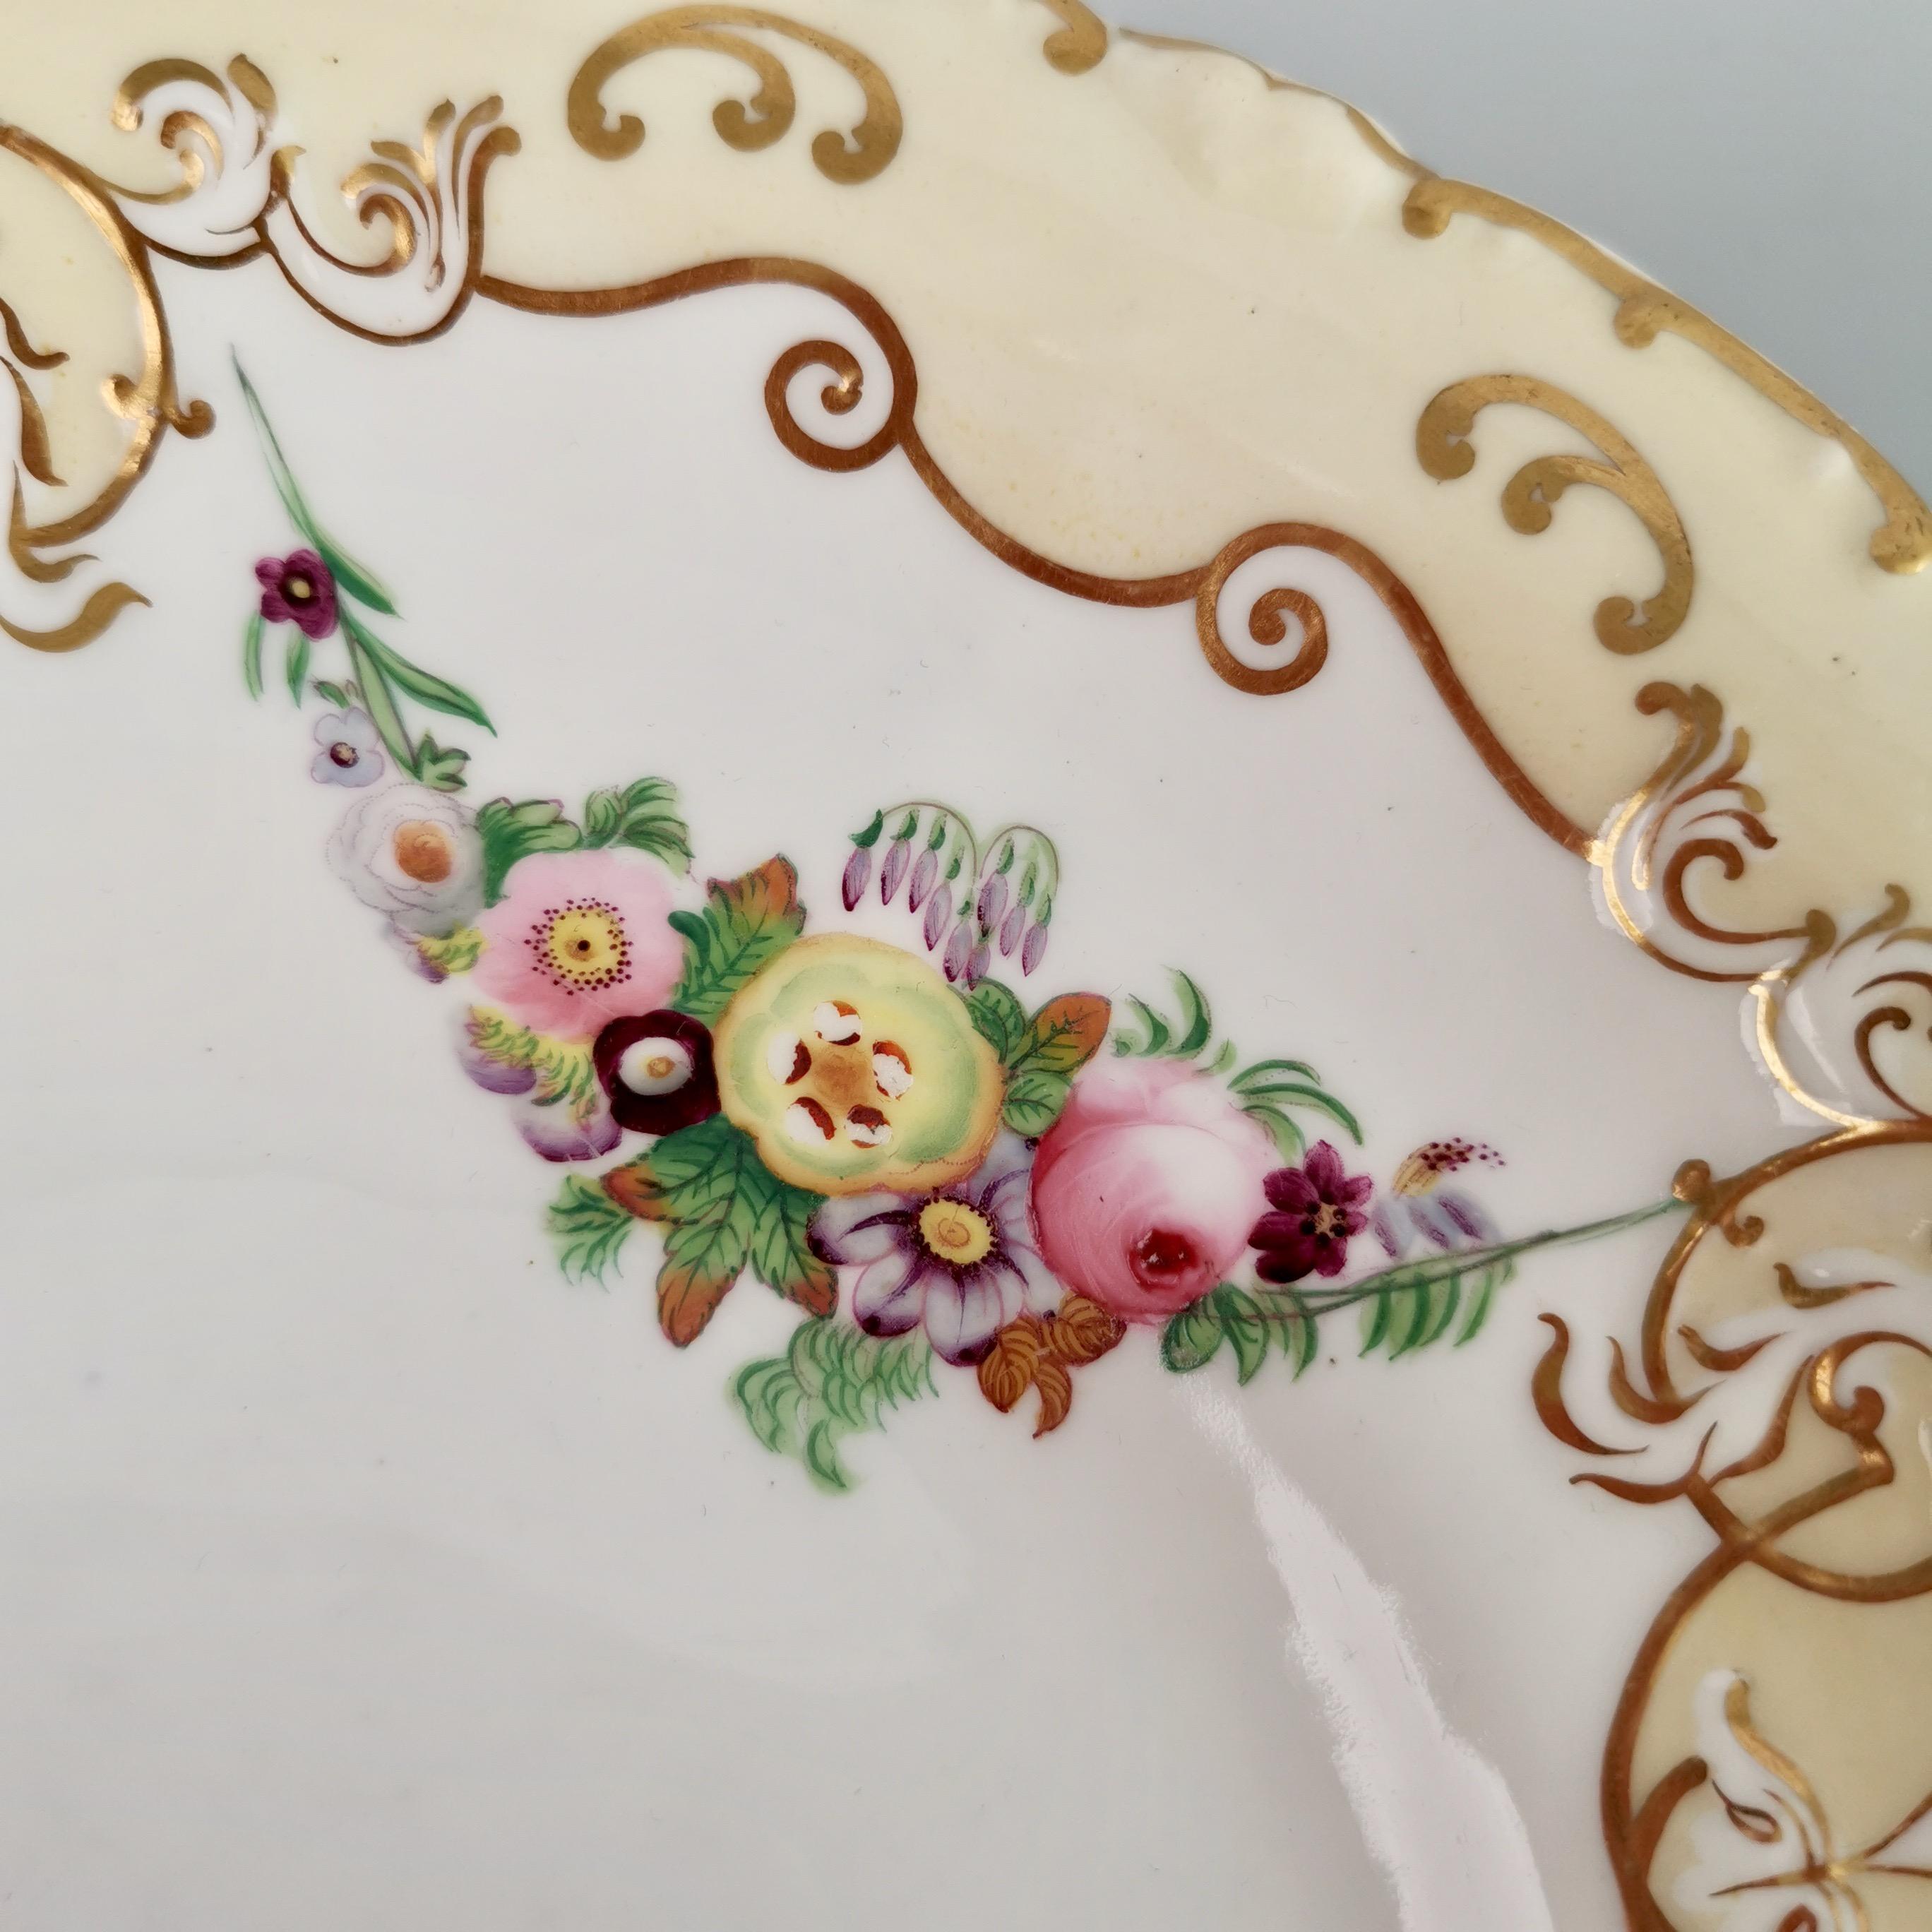 Copeland & Garrett Porcelain Dessert Serving Set, Yellow with Flowers, 1833-1847 3